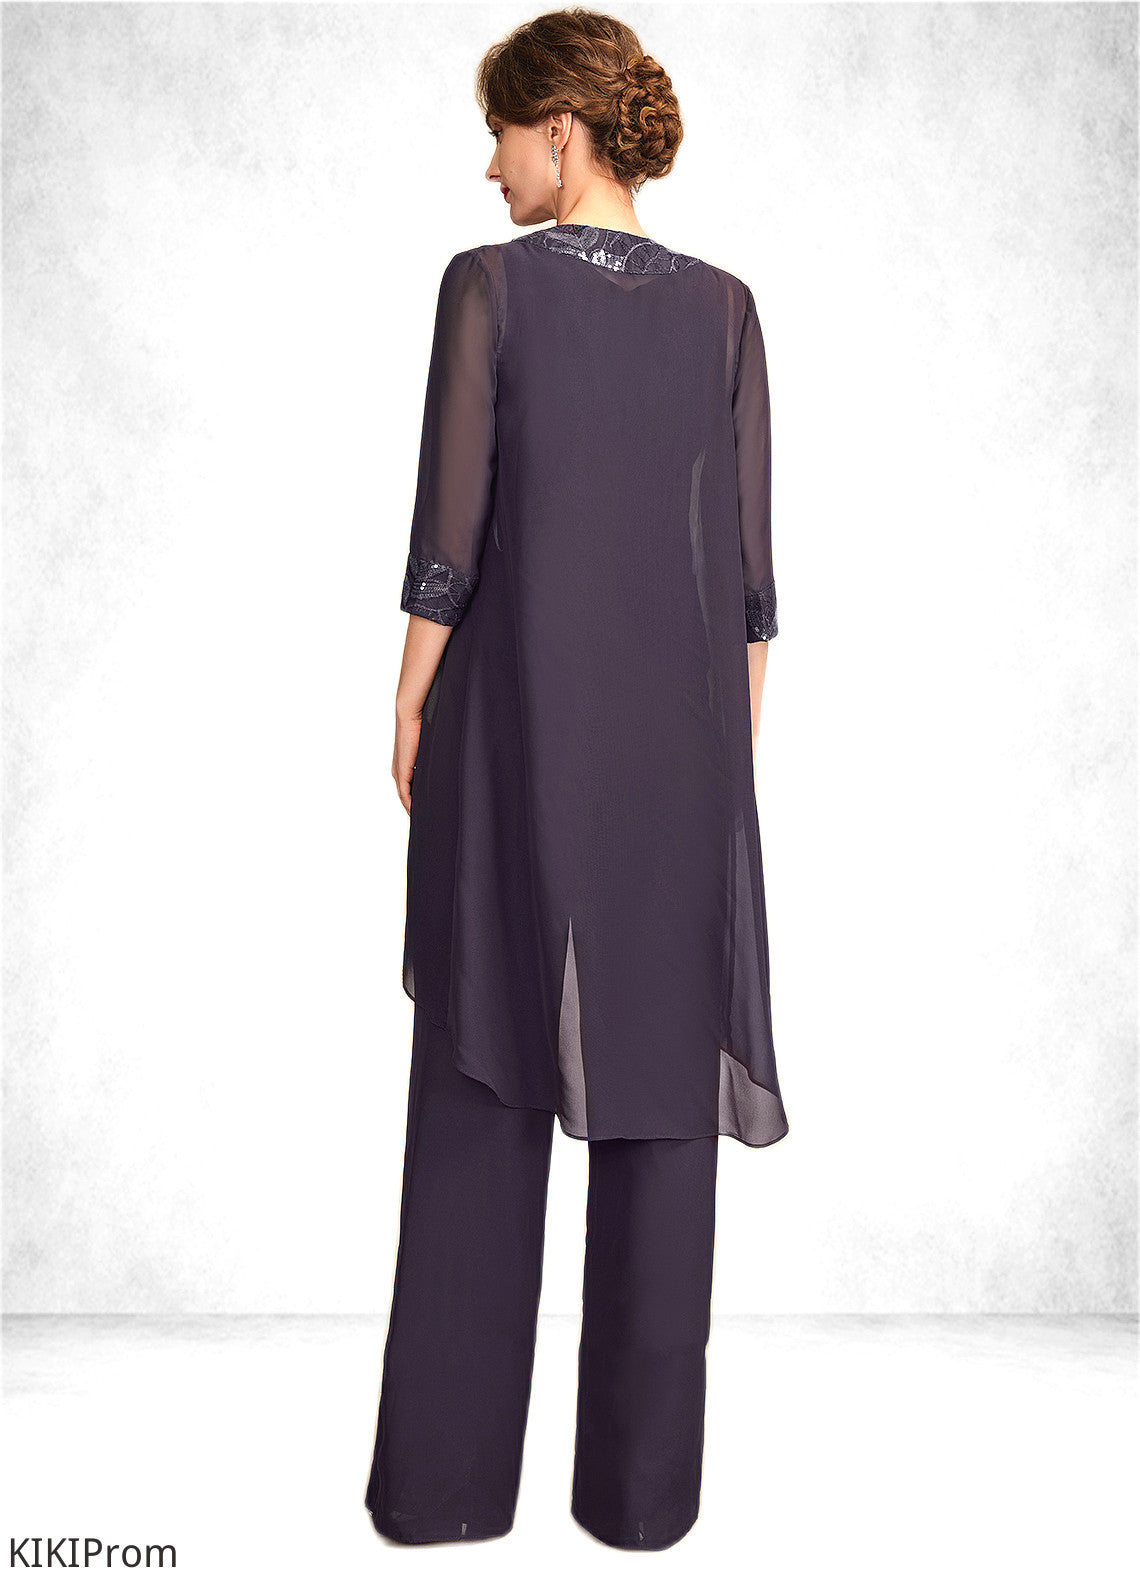 Cheyanne Jumpsuit/Pantsuit Scoop Neck Floor-Length Chiffon Lace Mother of the Bride Dress With Sequins DZ126P0015010